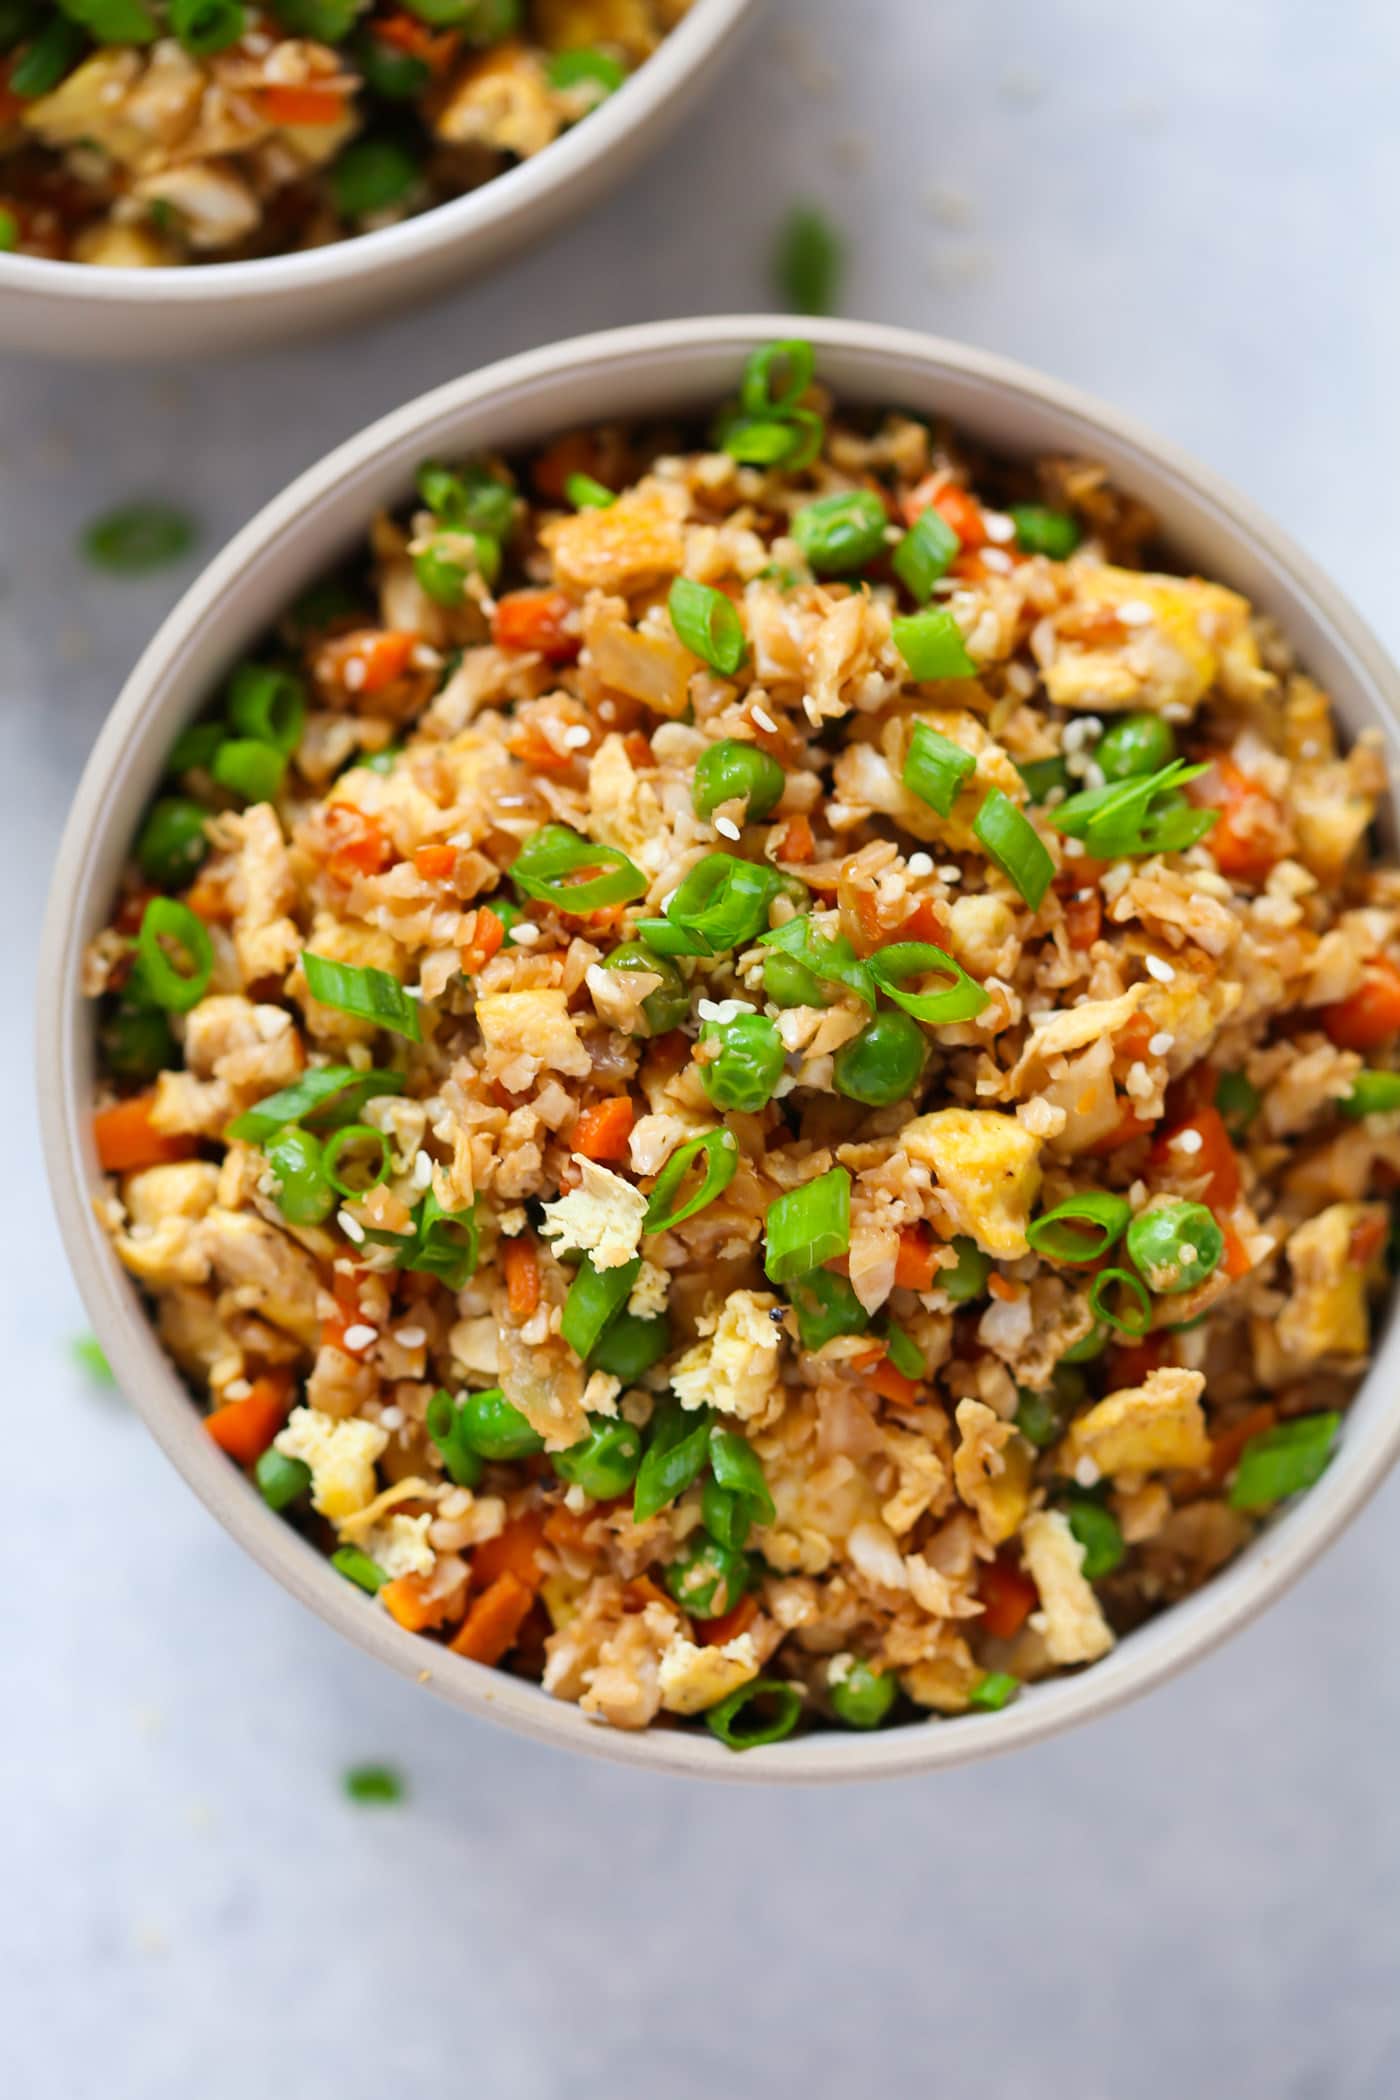 15 Scrumptious Ways to Make Vegetarian Fried Rice